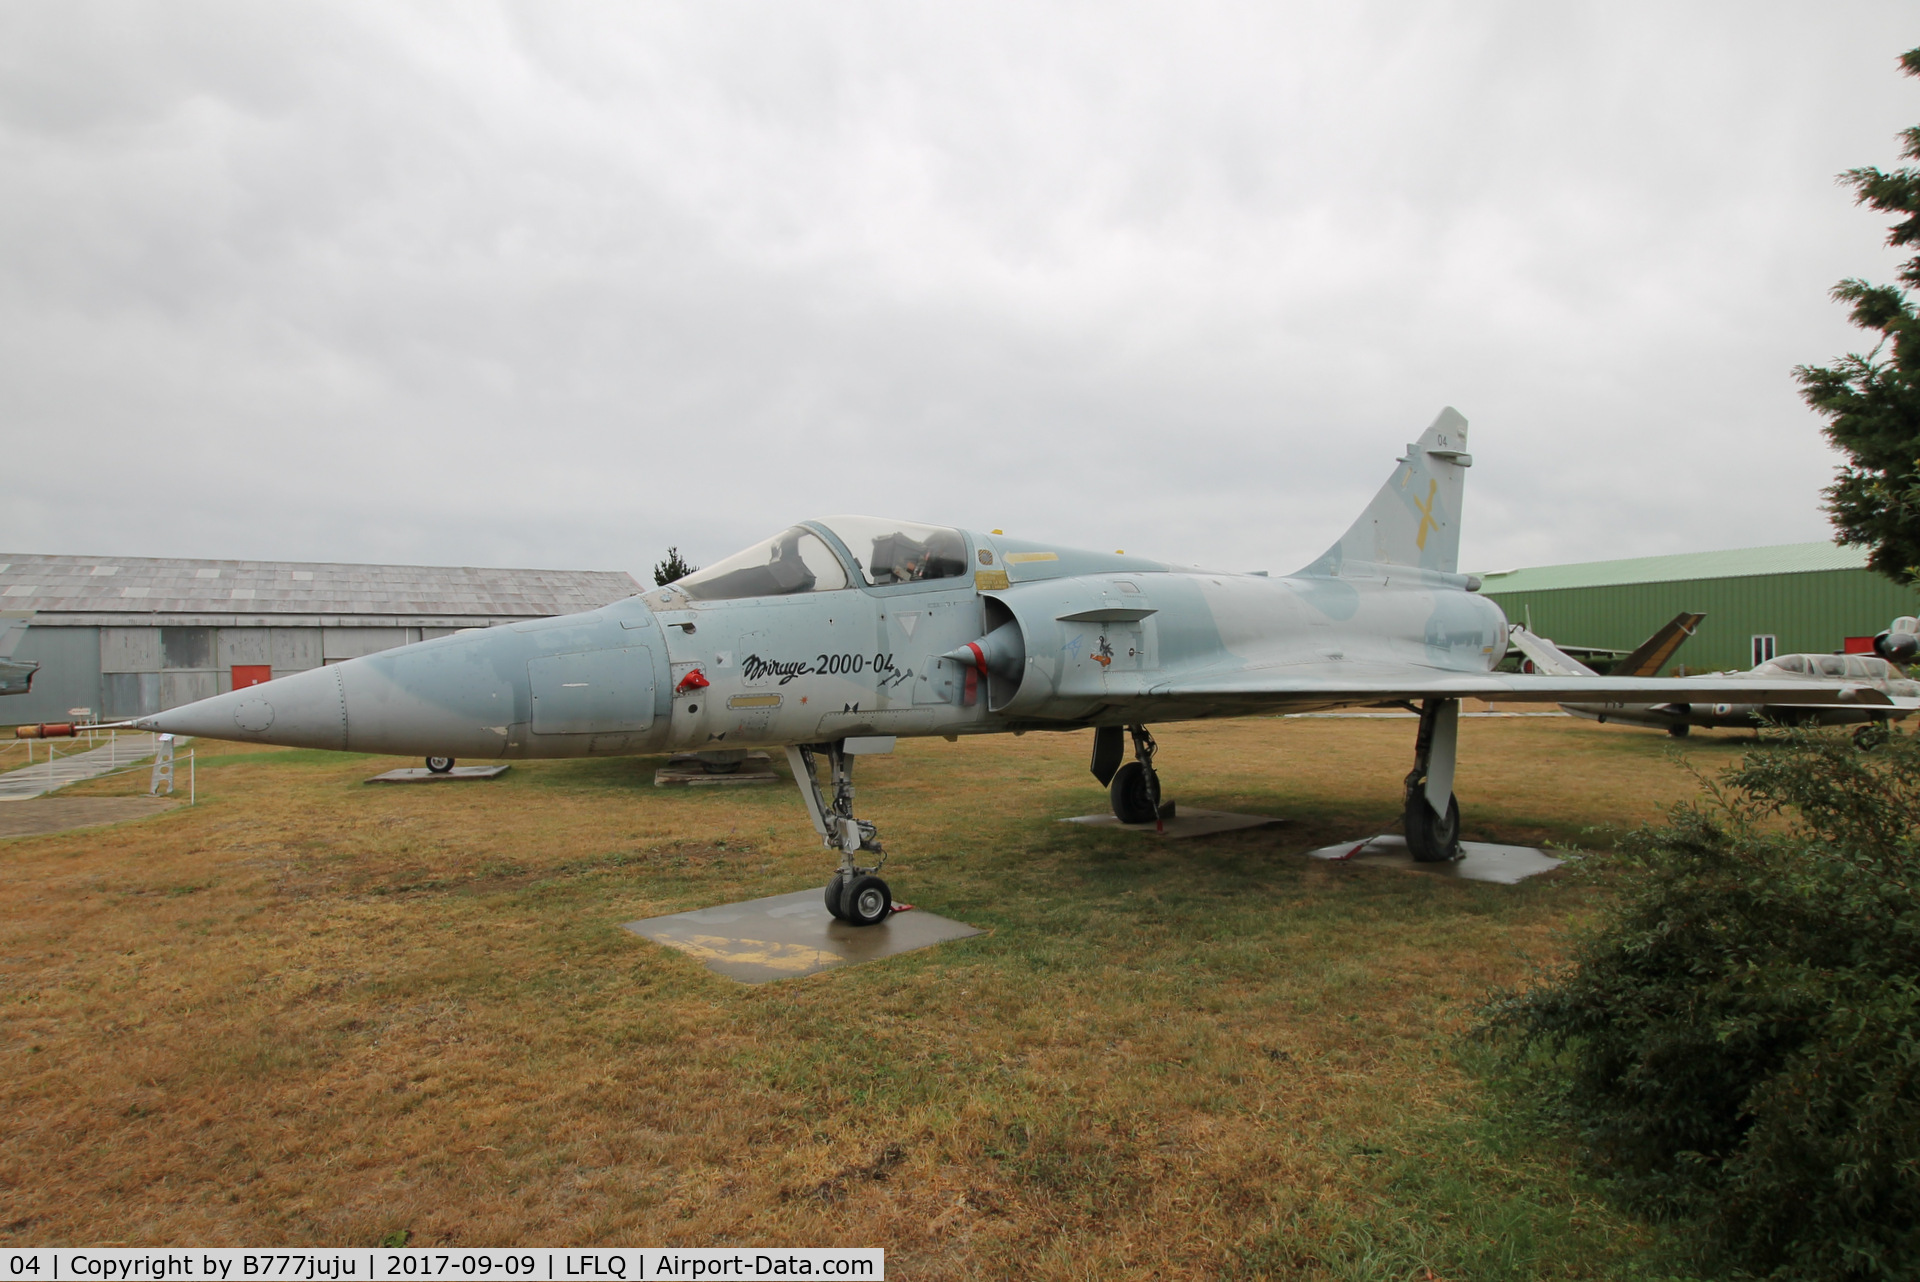 04, Dassault Mirage 2000 C/N 04, on display